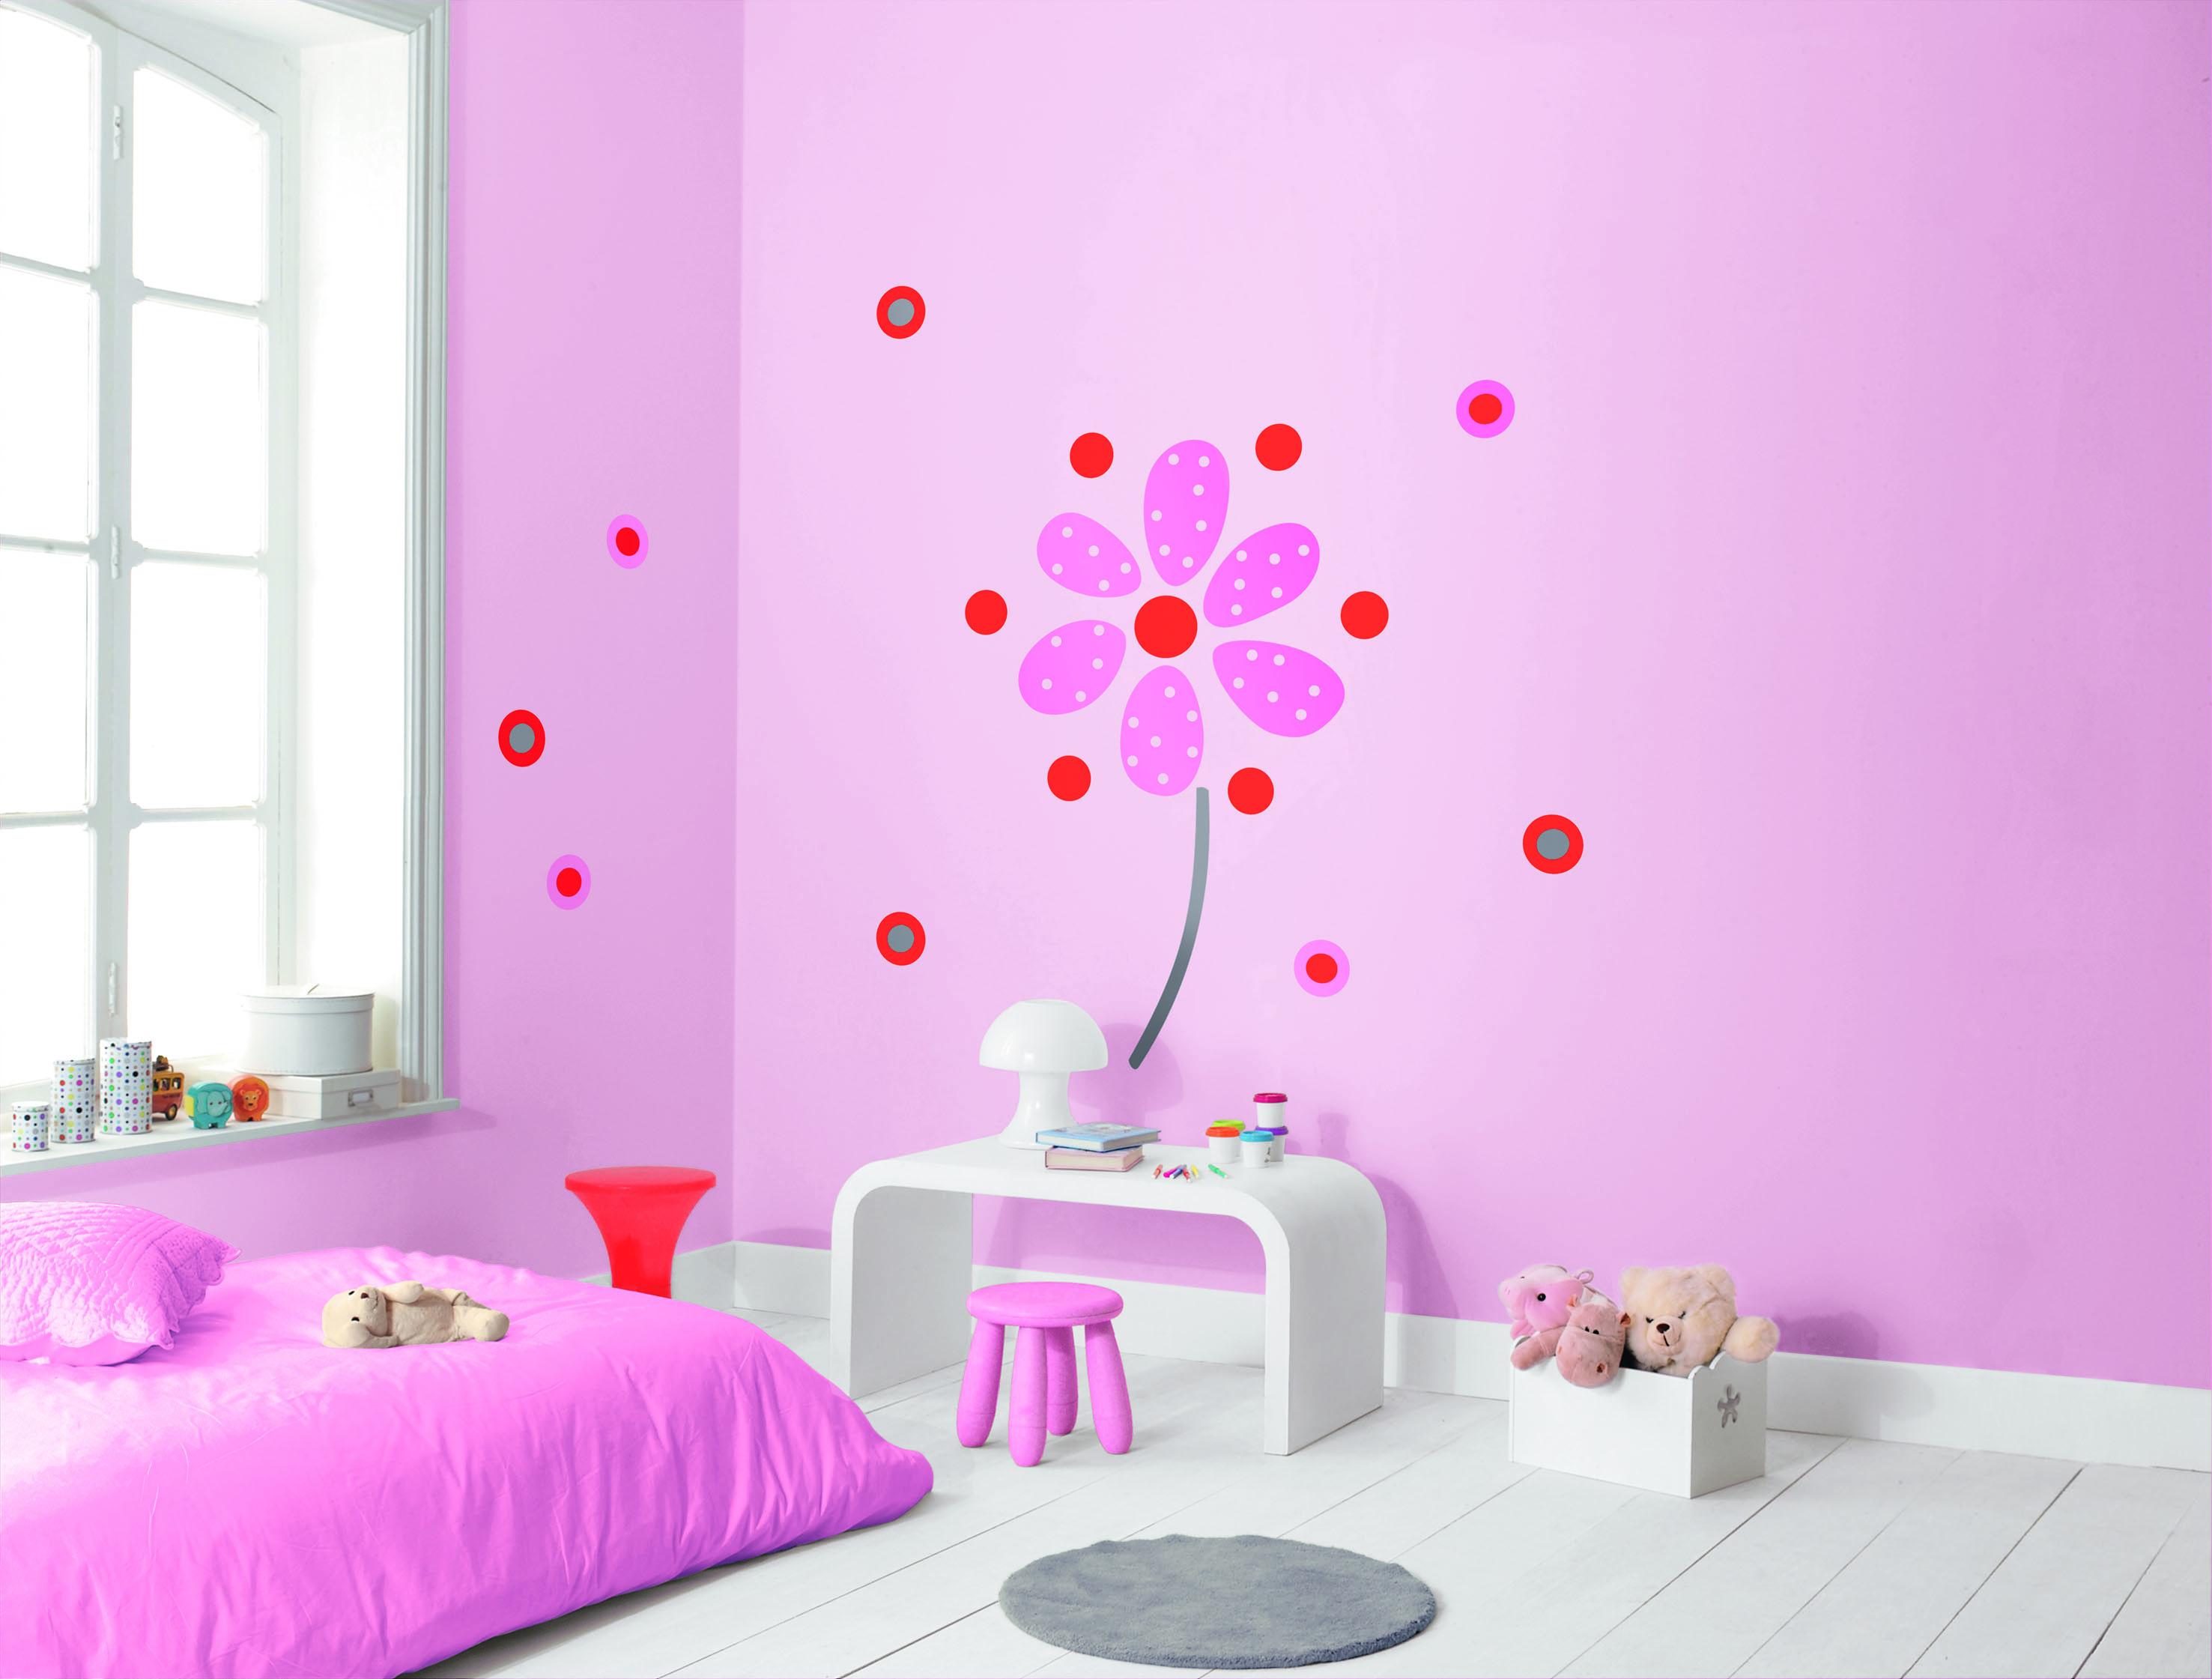 Kinderzimmer Tapete mit Blume und Unitapete in rosa #mädchenzimmer #wandgestaltungkinderzimmer ©Casadeco